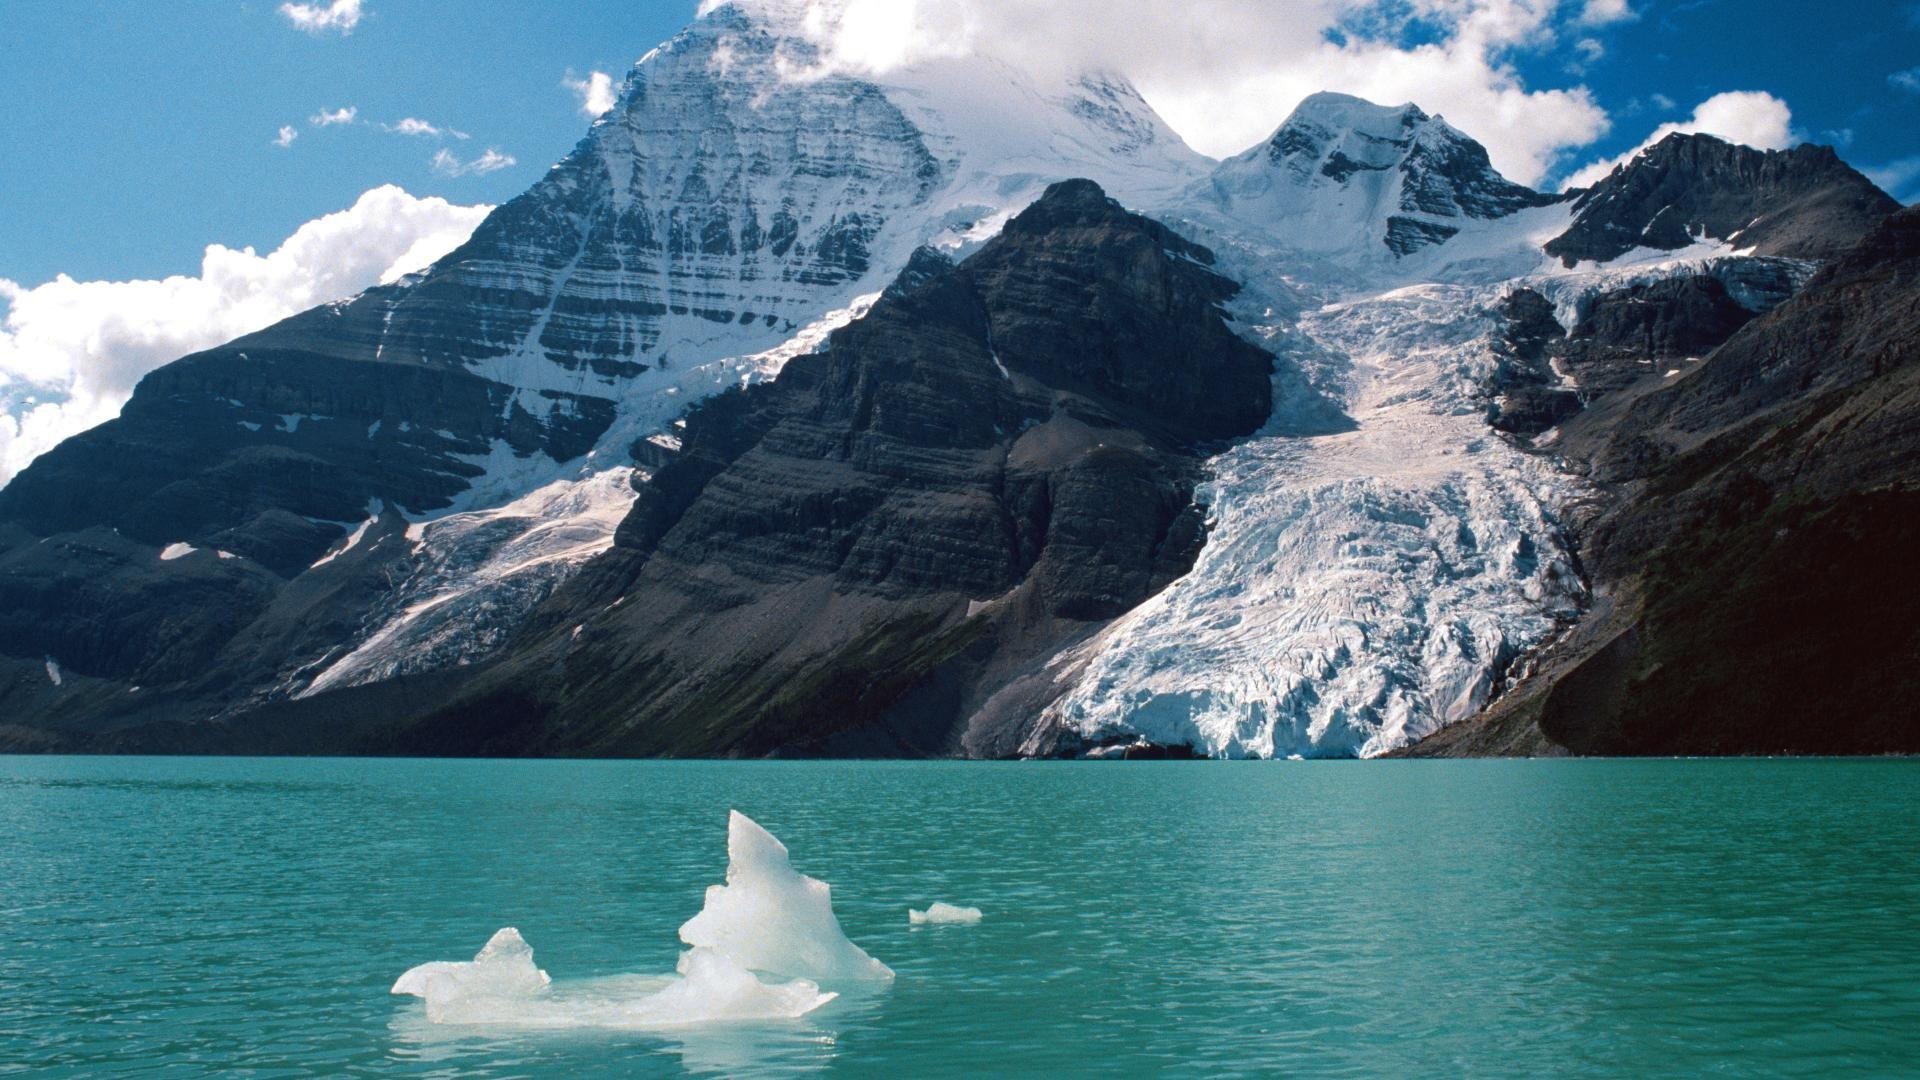 fond d'écran rockies,paysage naturel,la nature,lac glaciaire,montagne,iceberg